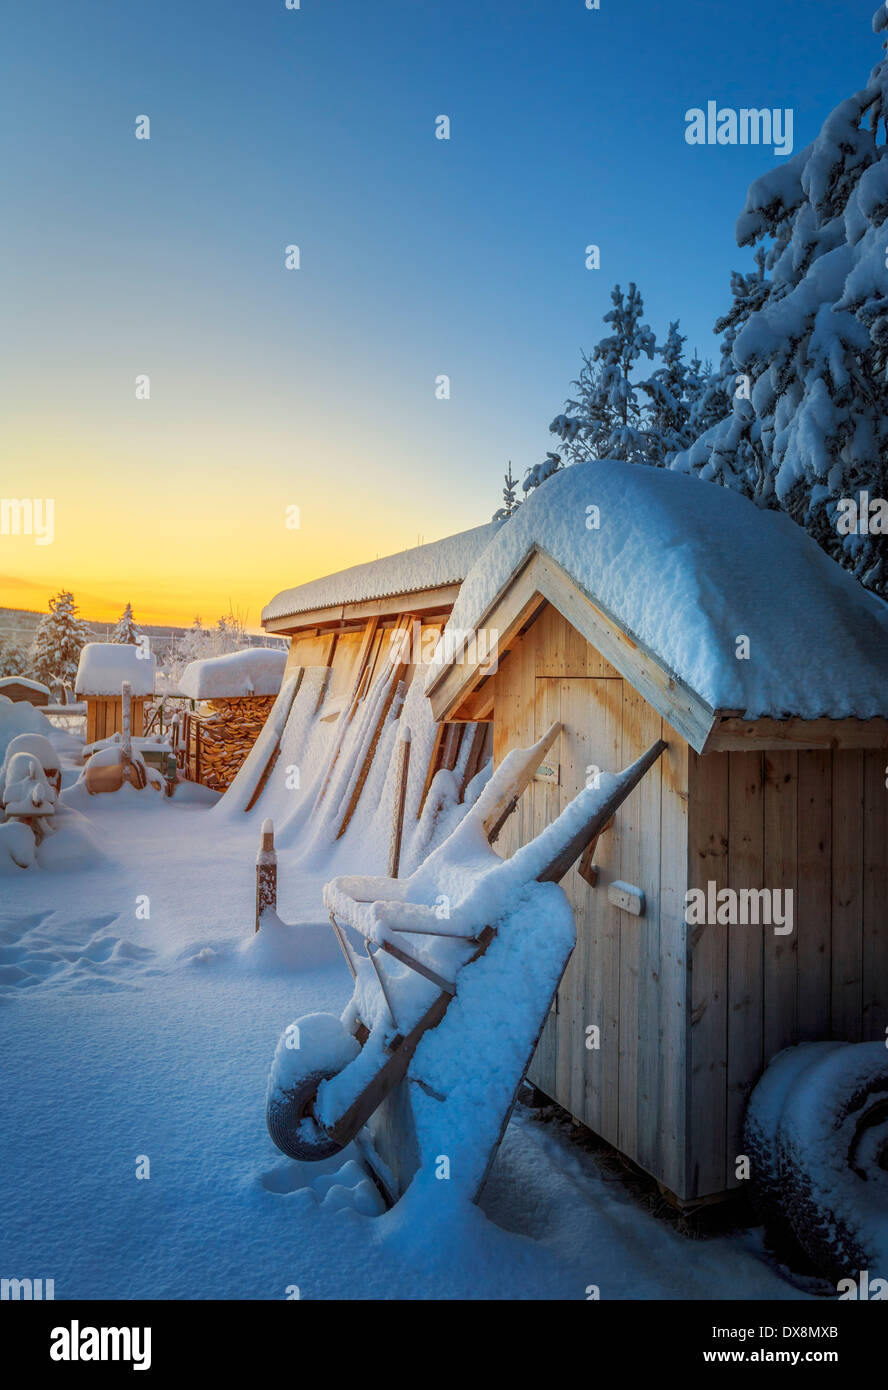 Coperte di neve tettoia in legno, Lapponia, Svezia Foto Stock